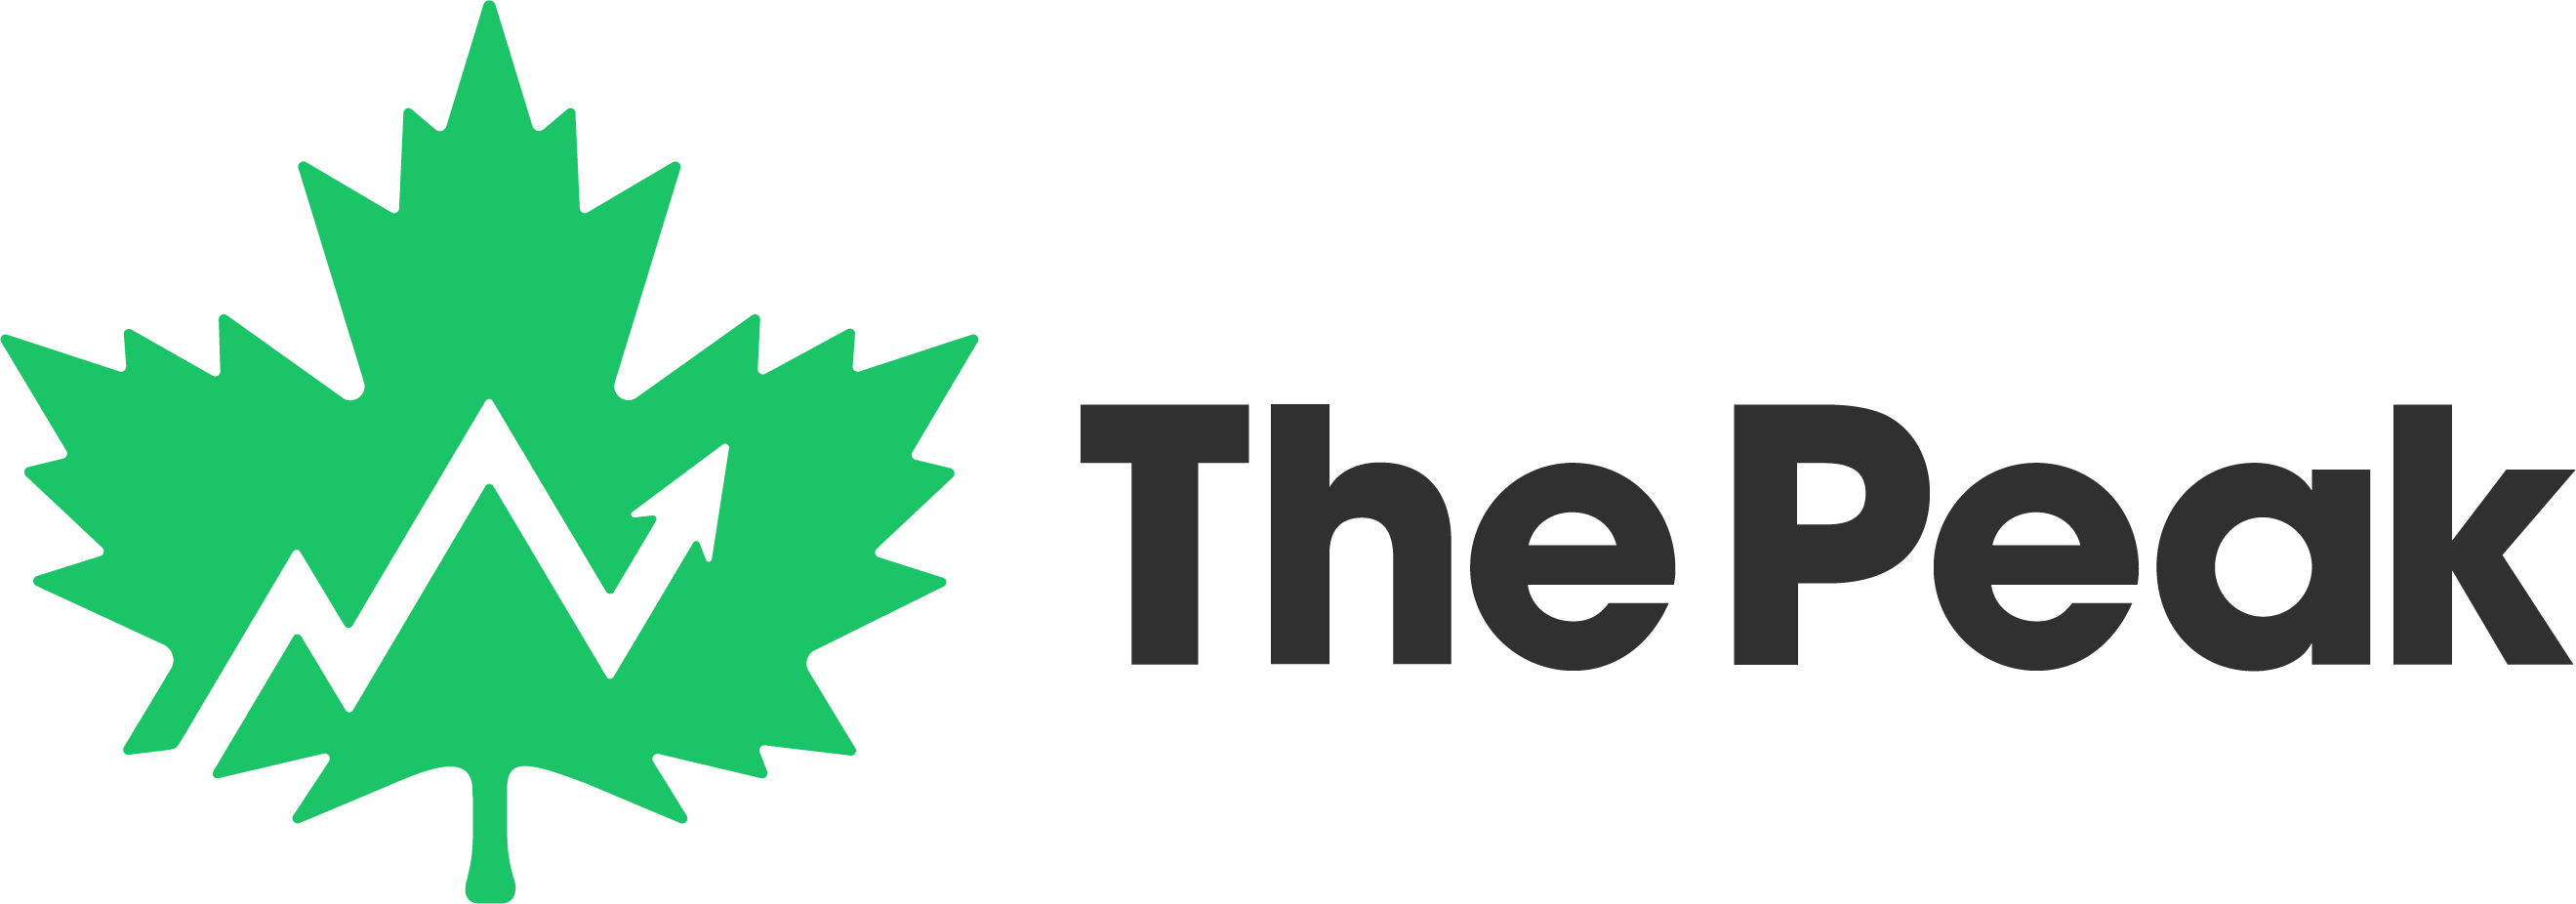 The Peak logo